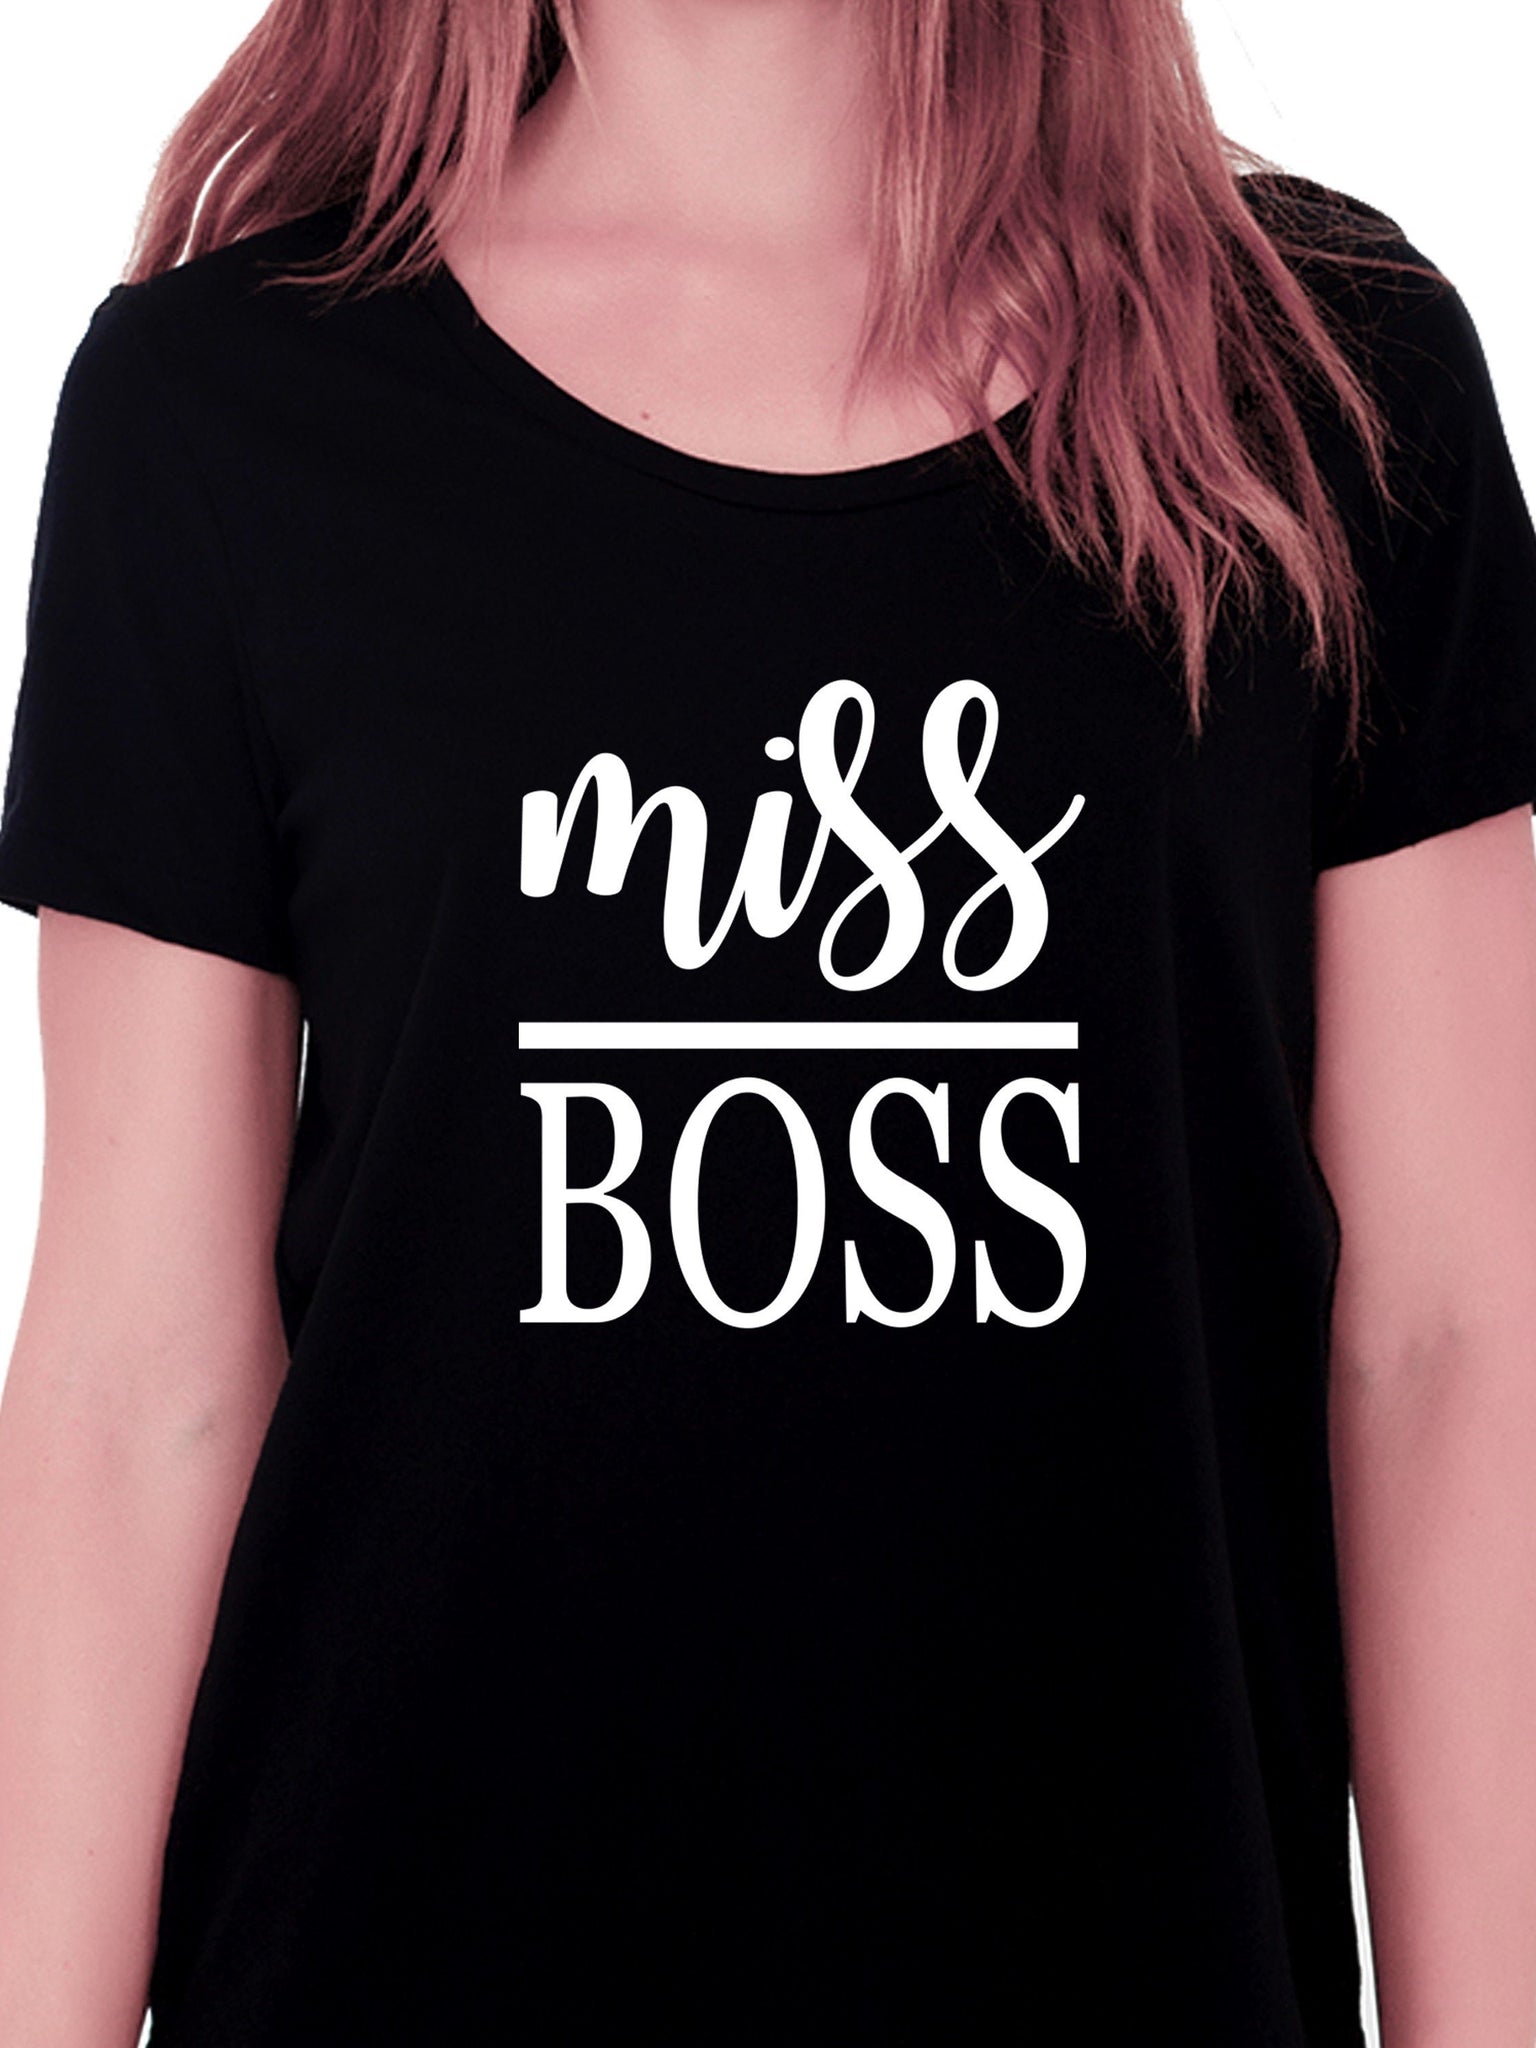 Miss Boss T-shirt for Women - Let's Beach